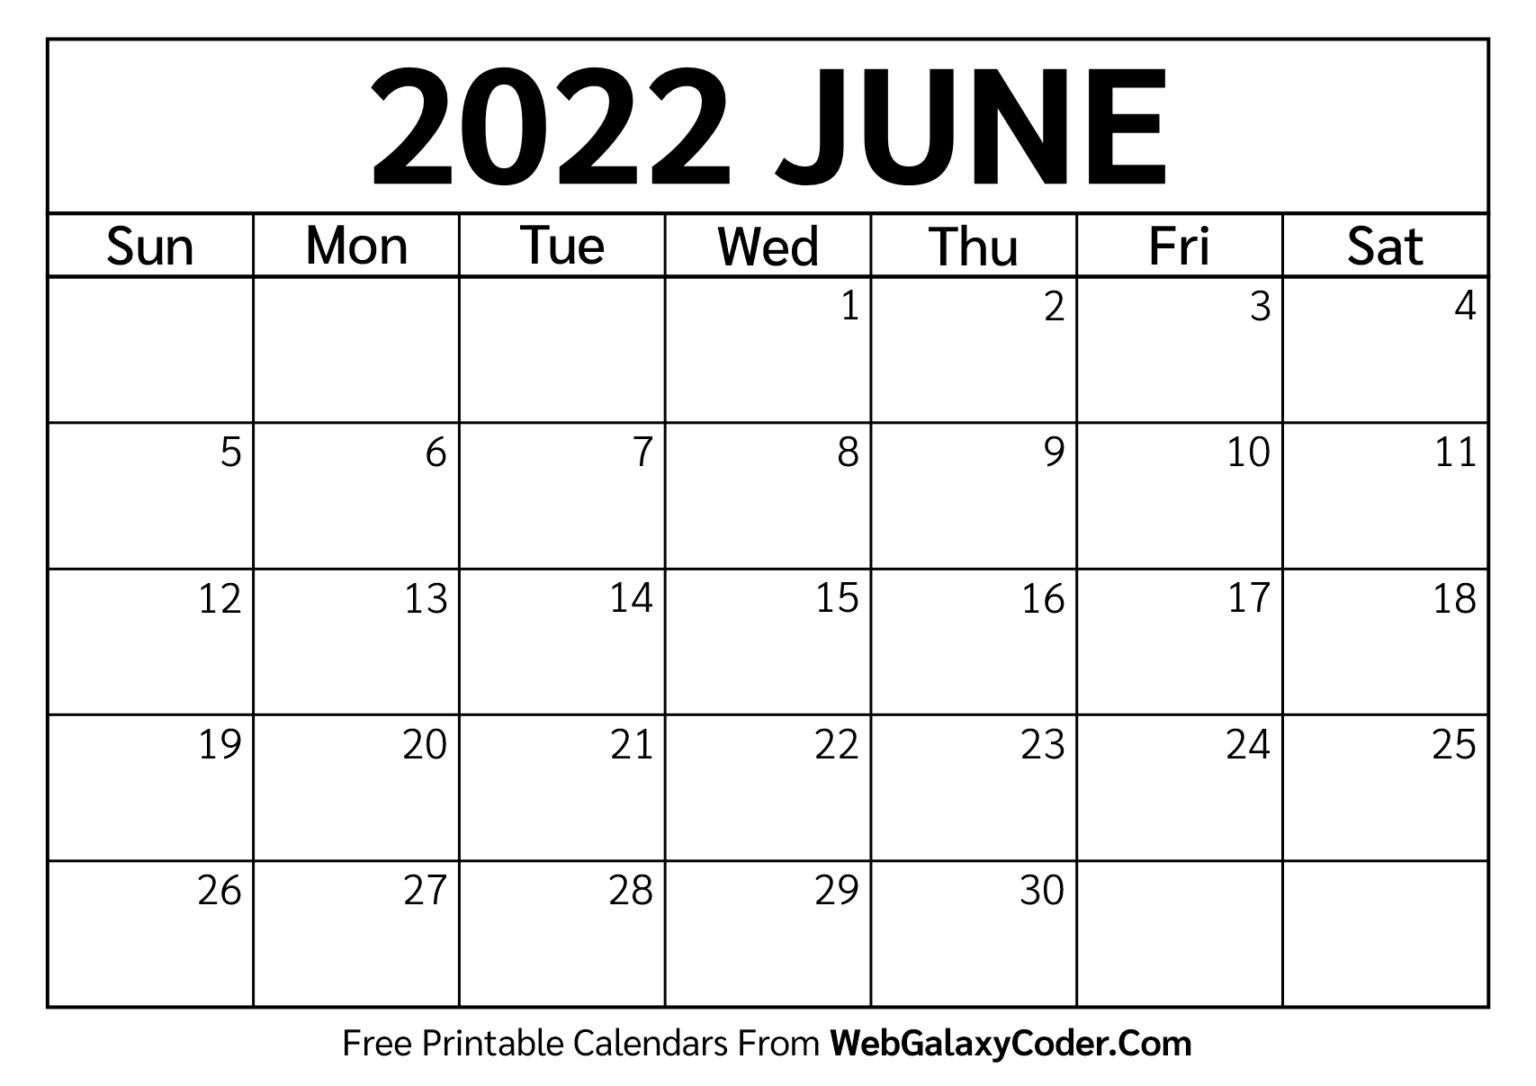 June 2022 Calendar - Printable Format - Print Now